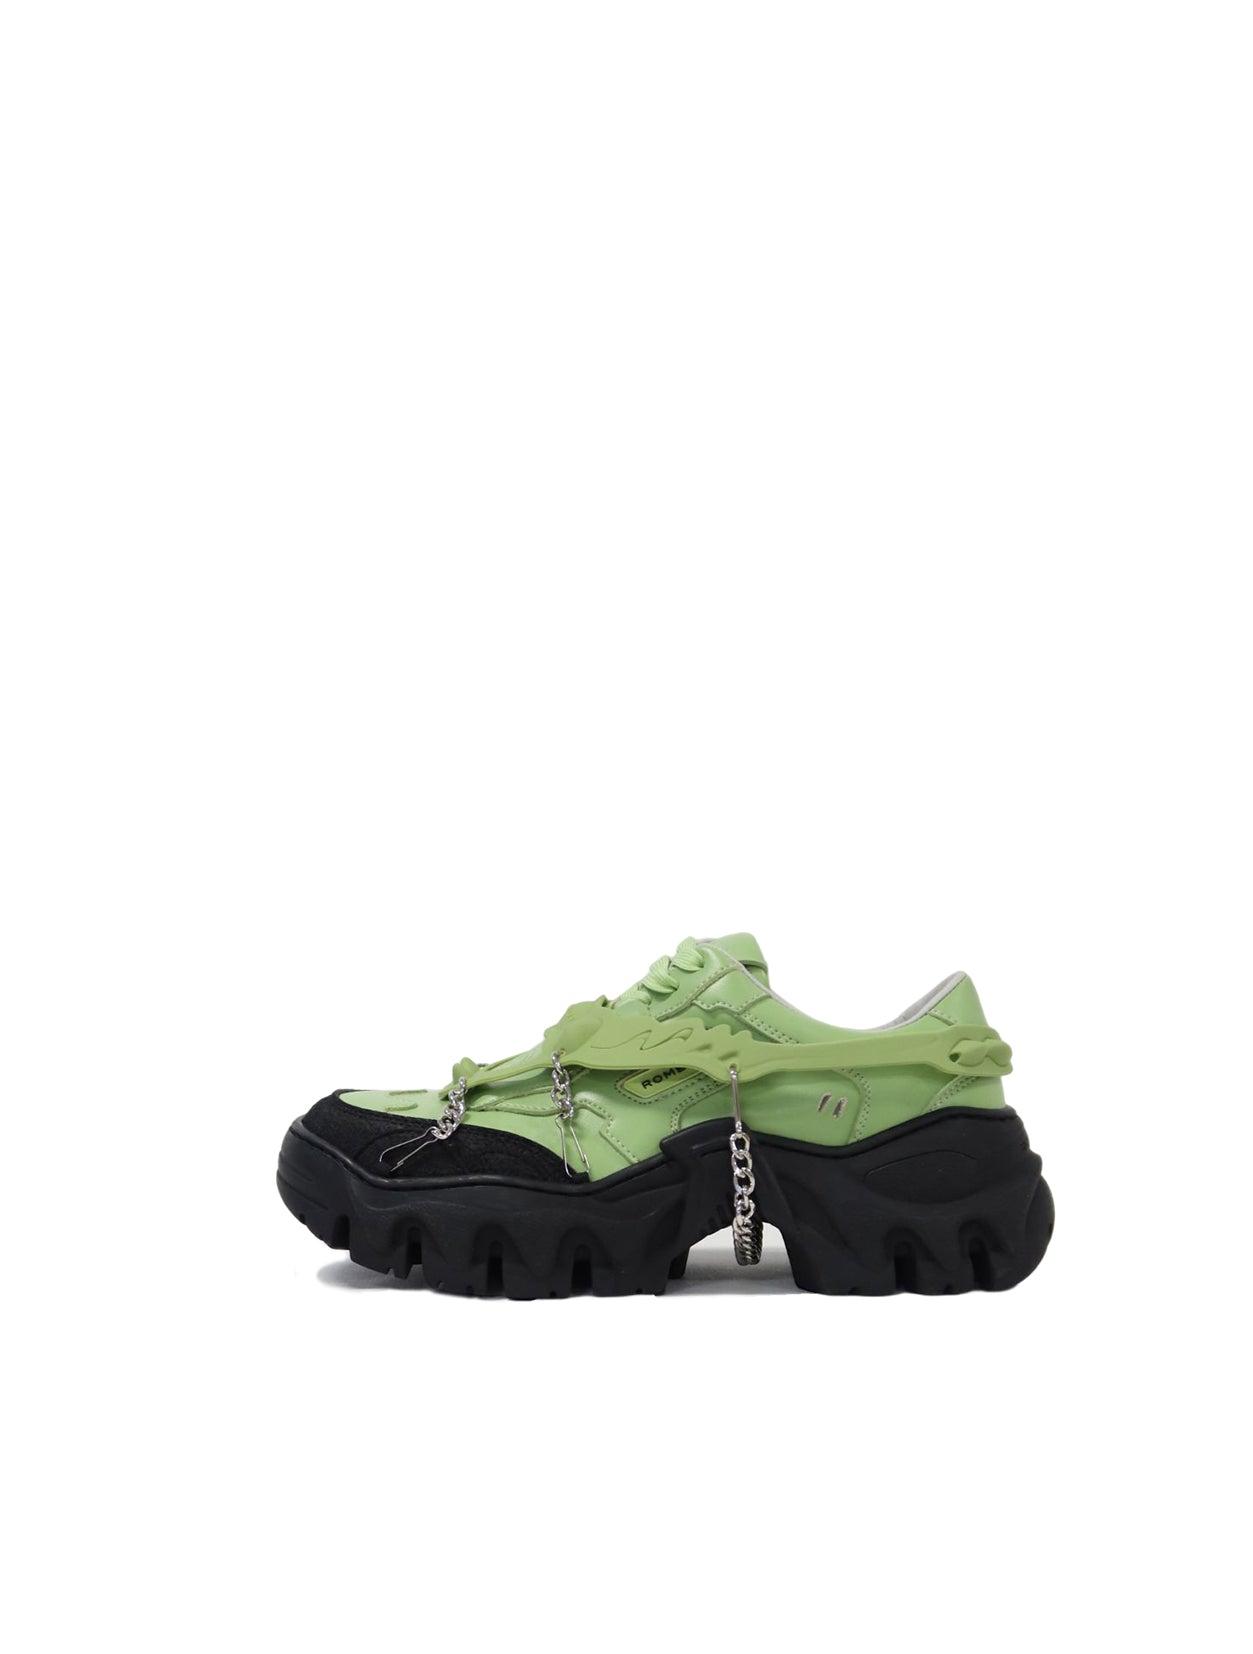 Rombaut Boccaccio Ii Aloe Vera Harness Sneaker in Green | Lyst